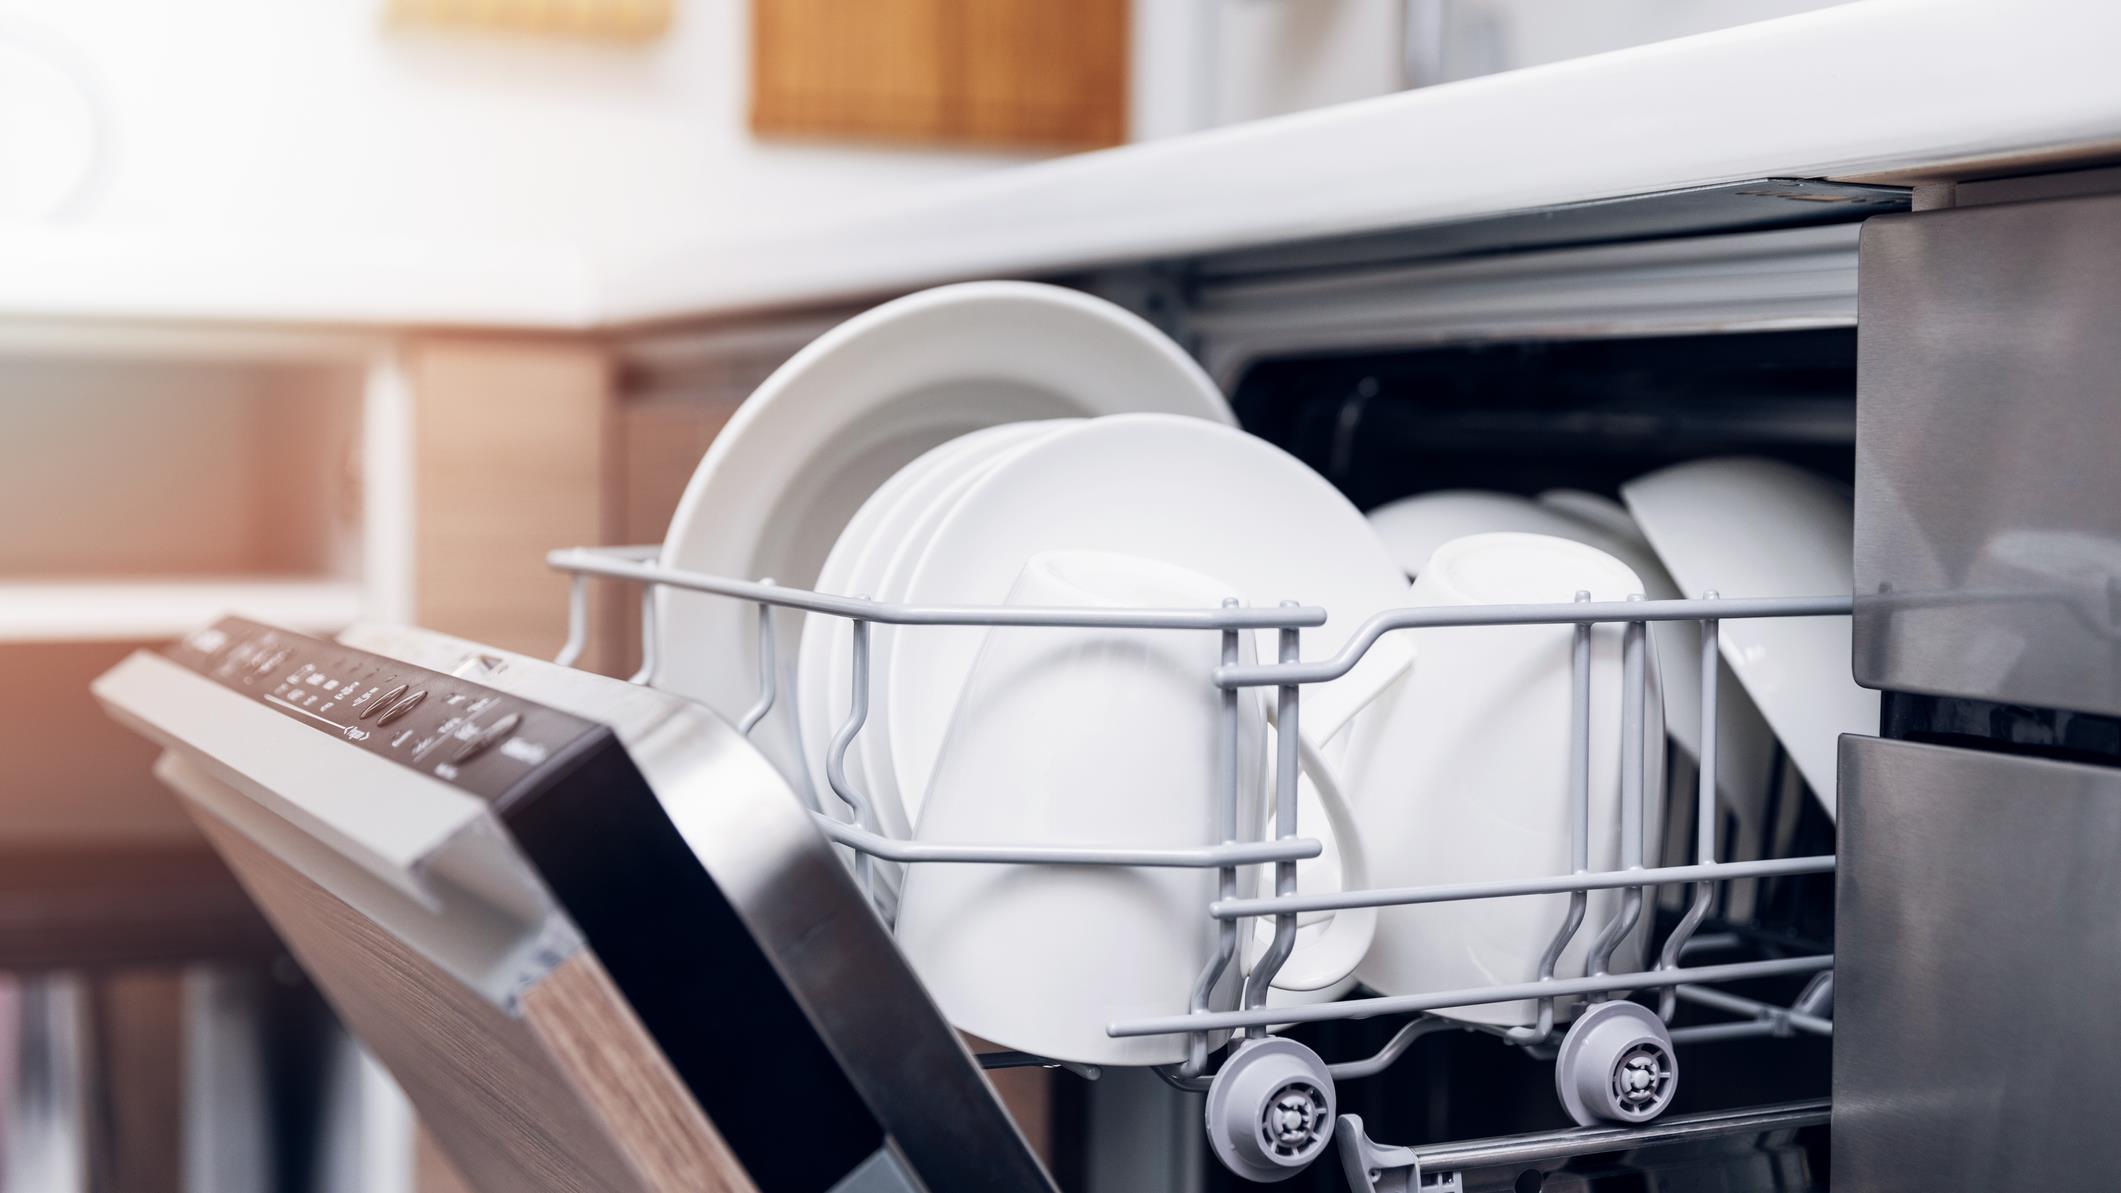 Évaluation du lave-vaisselle de Bosch - Blogue Best Buy